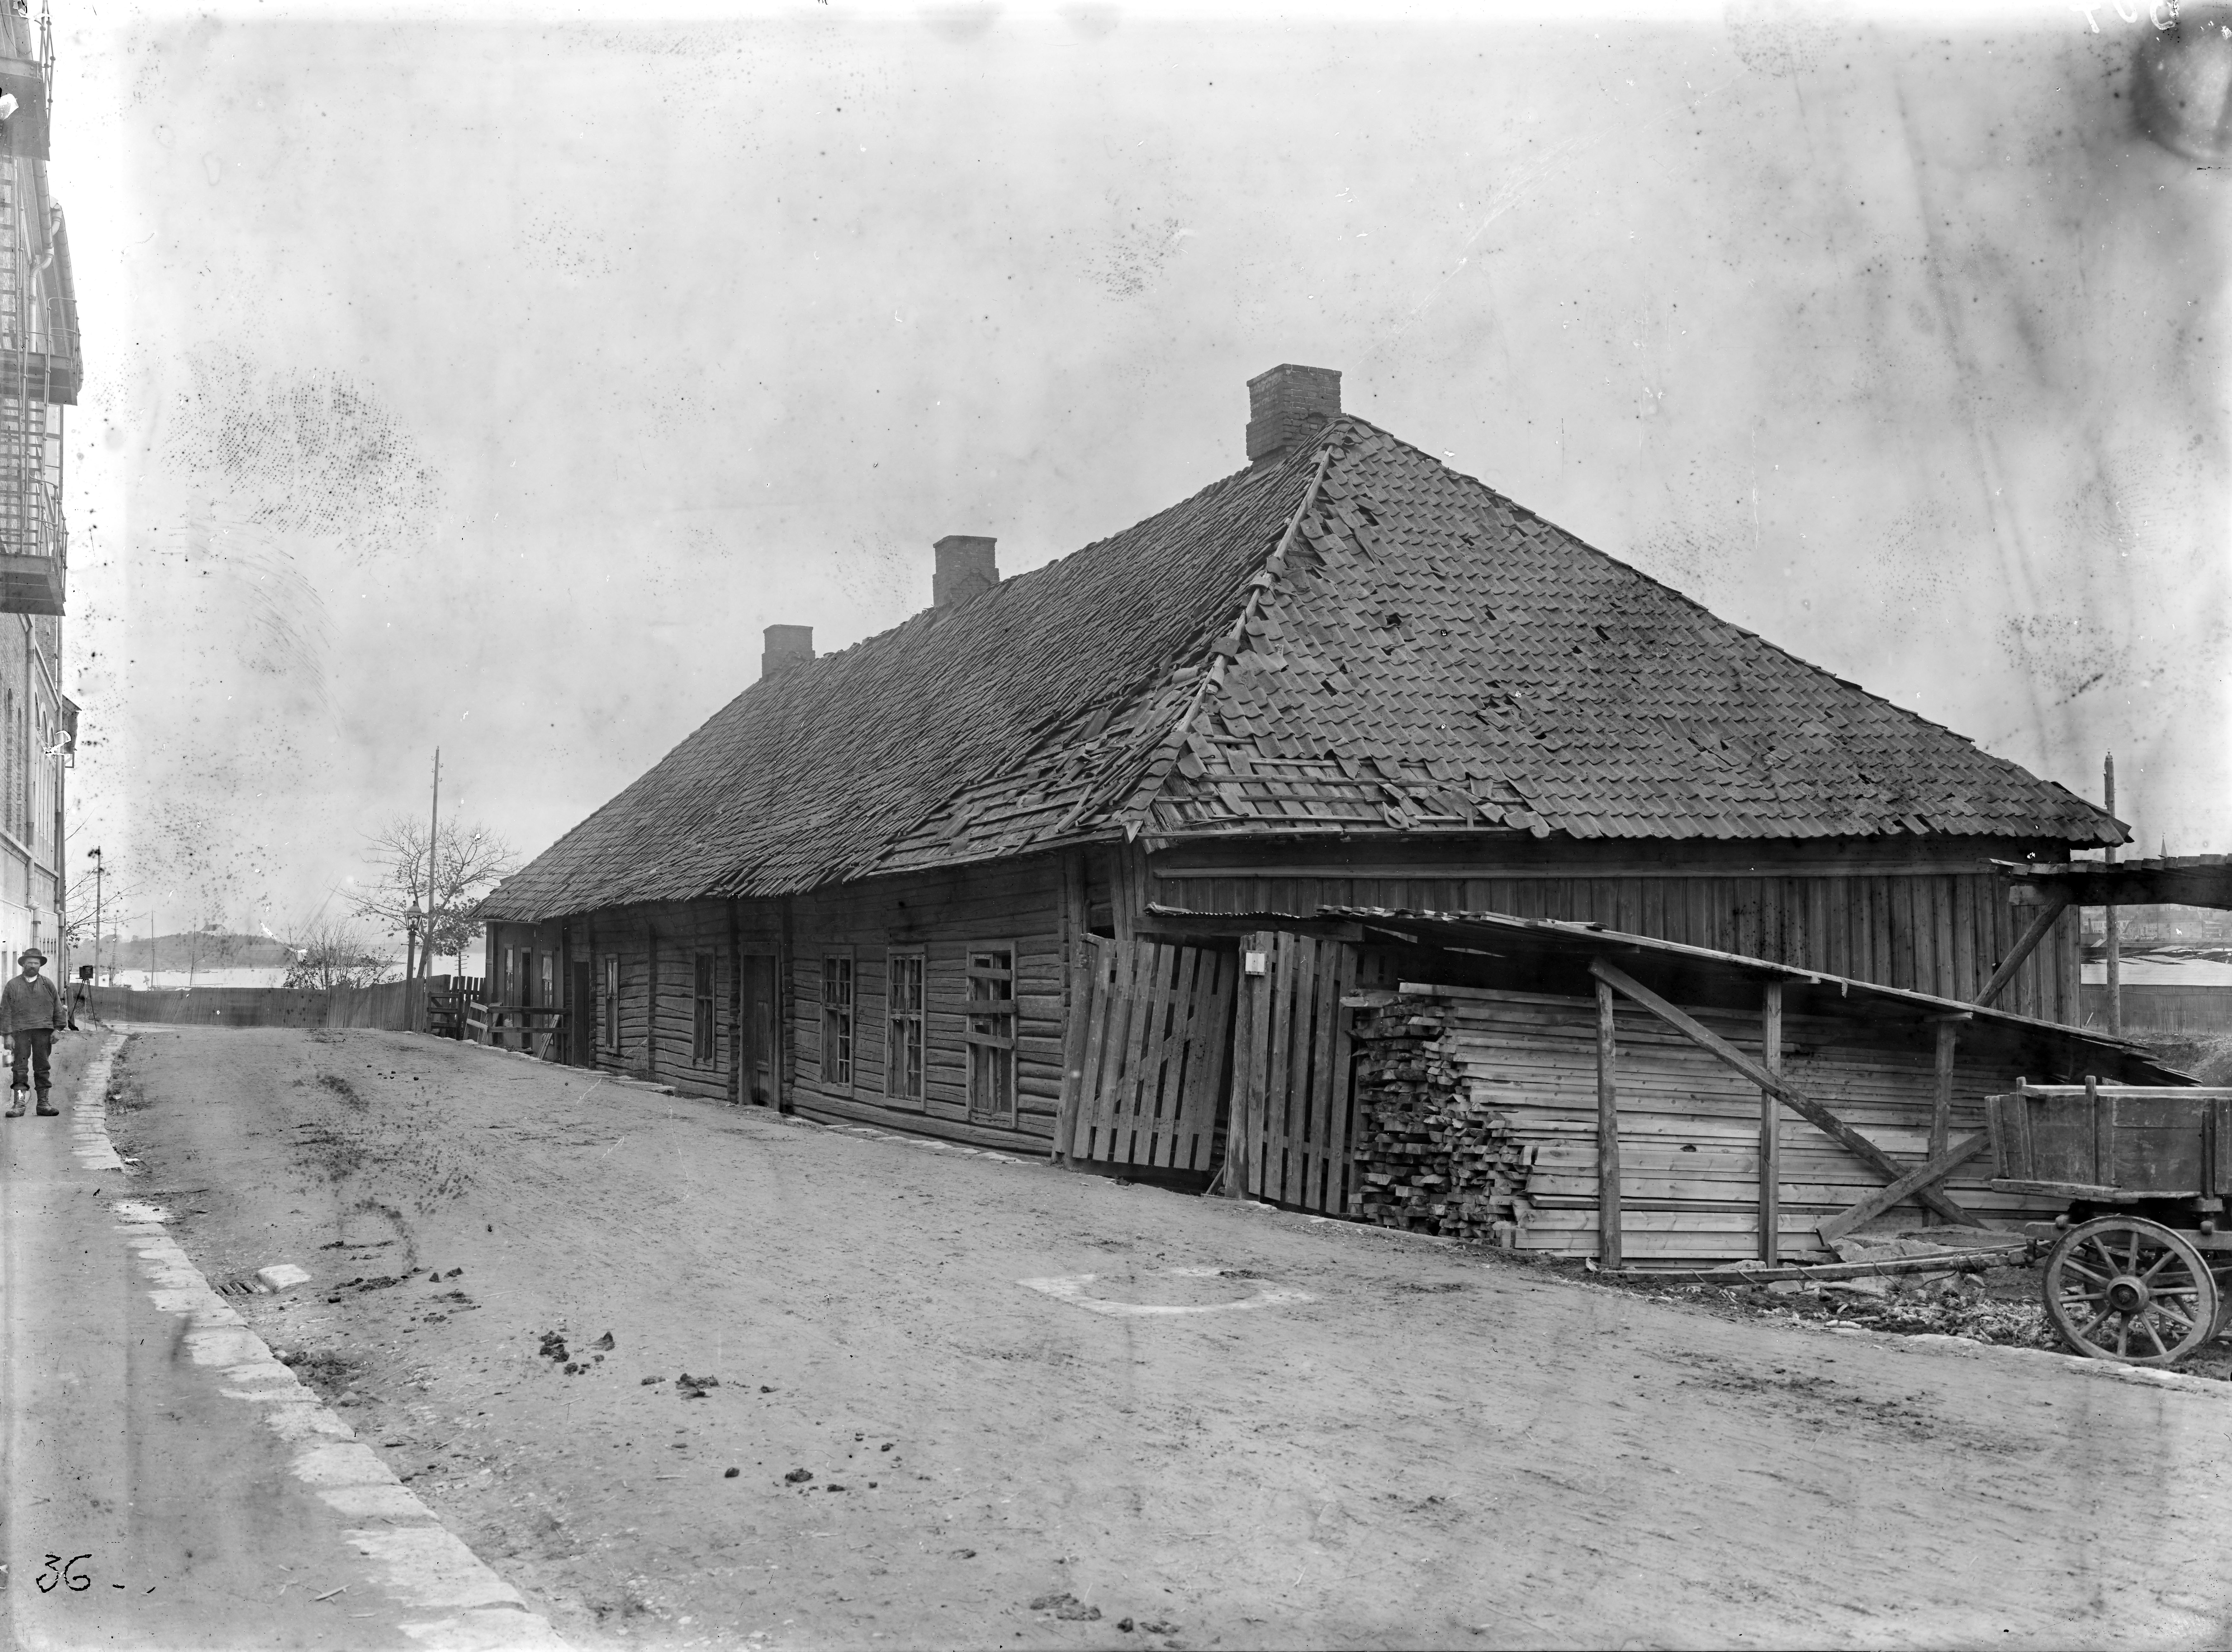 Alunverkets gamle hovedbygning ble revet på midten av 1800-tallet, men fabrikkbygninger ble stående til utbygginger på begynnelsen av 1900-tallet. Bildet er viser en av fabrikkbygningene i Grønlia ca. 1900.